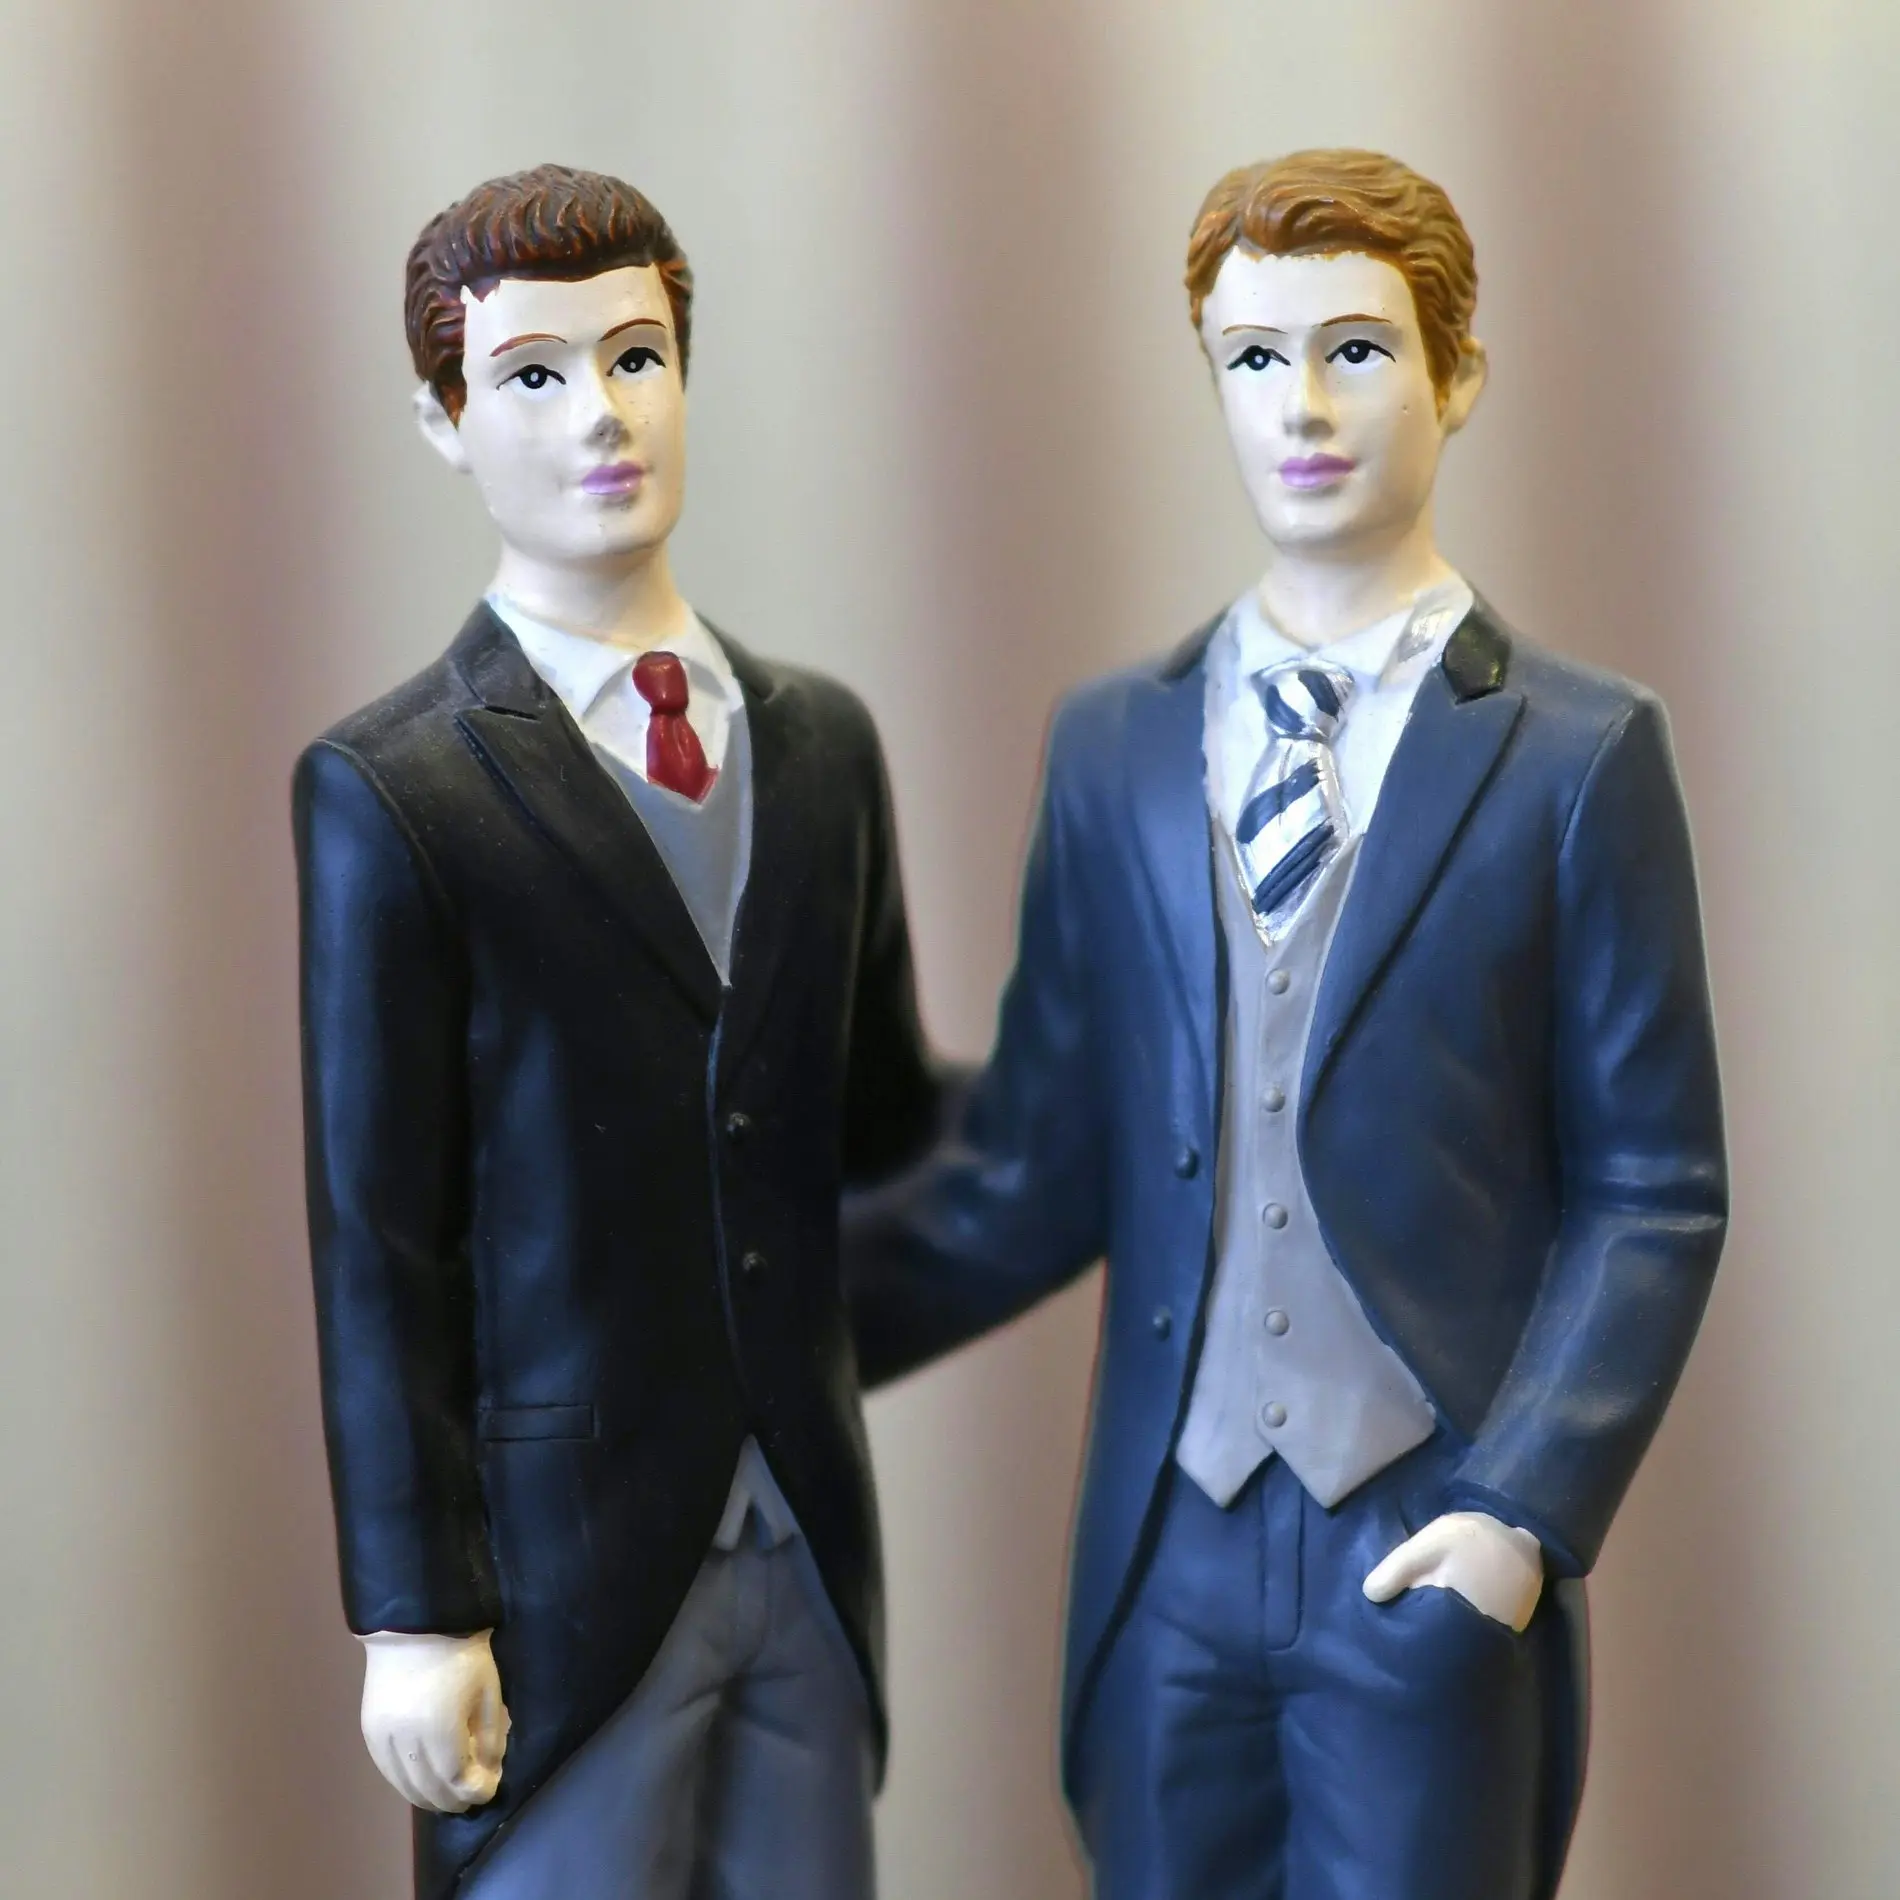 Zwei männliche Figuren im Anzug mit Krawatte